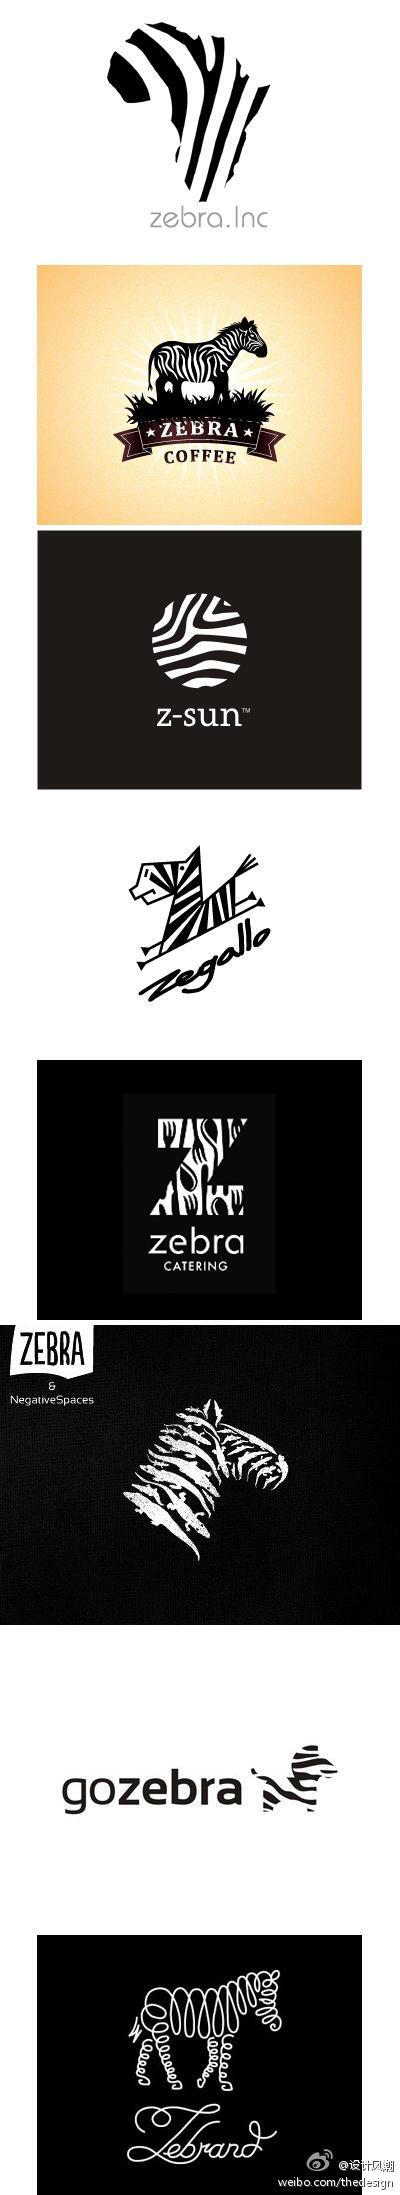 关于斑马的logo设计，简单却印象深刻。